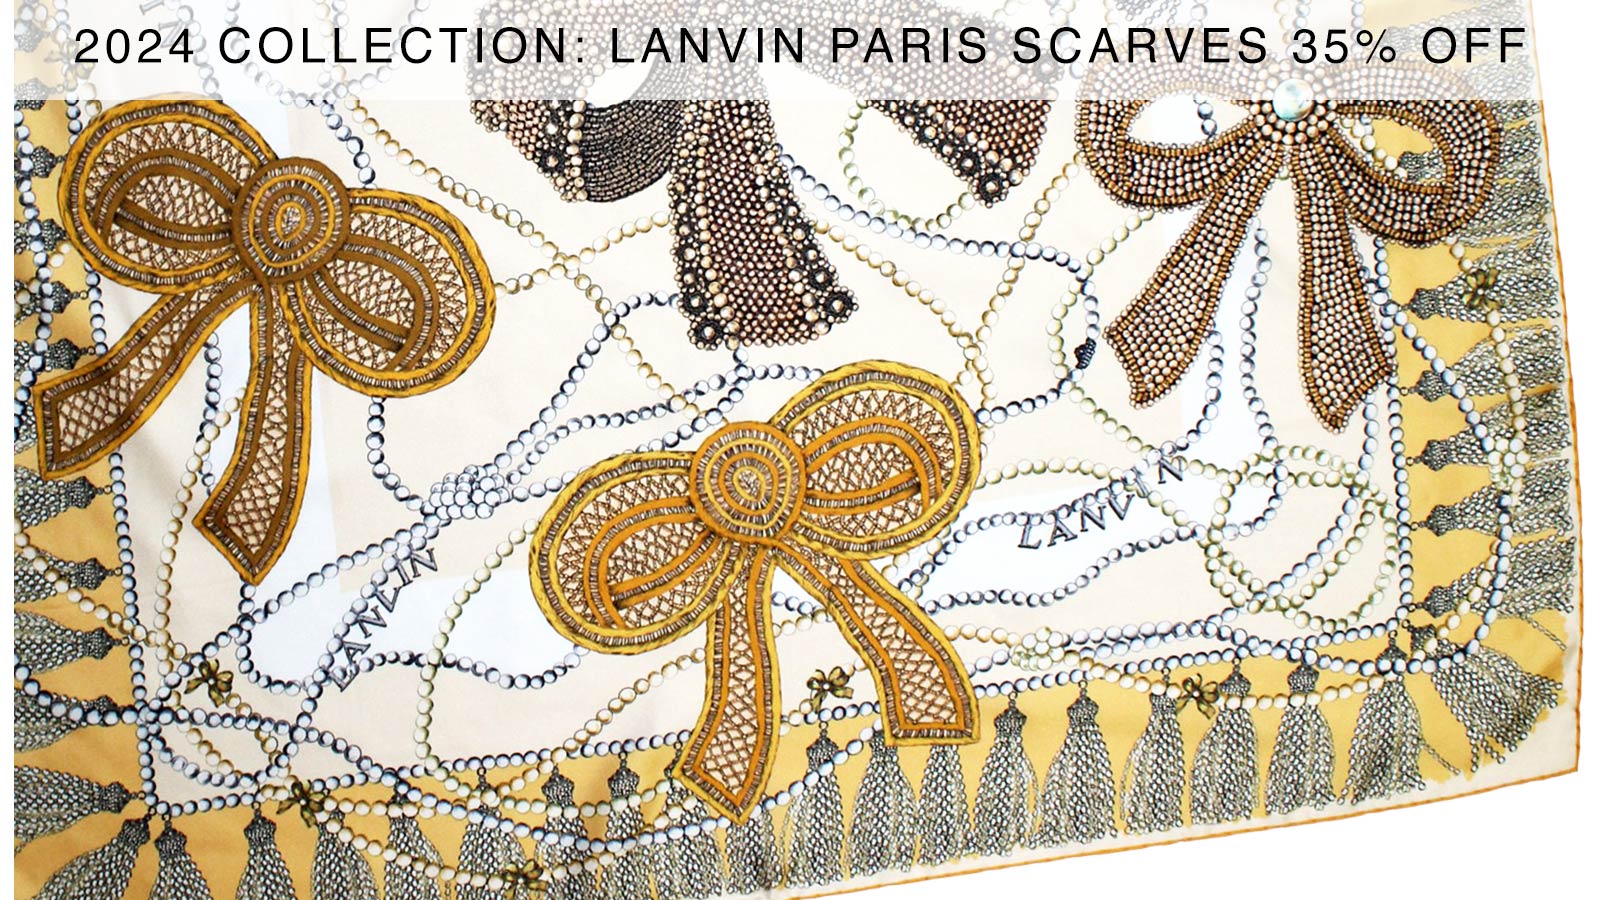 Lanvin Paris Scarves Sale